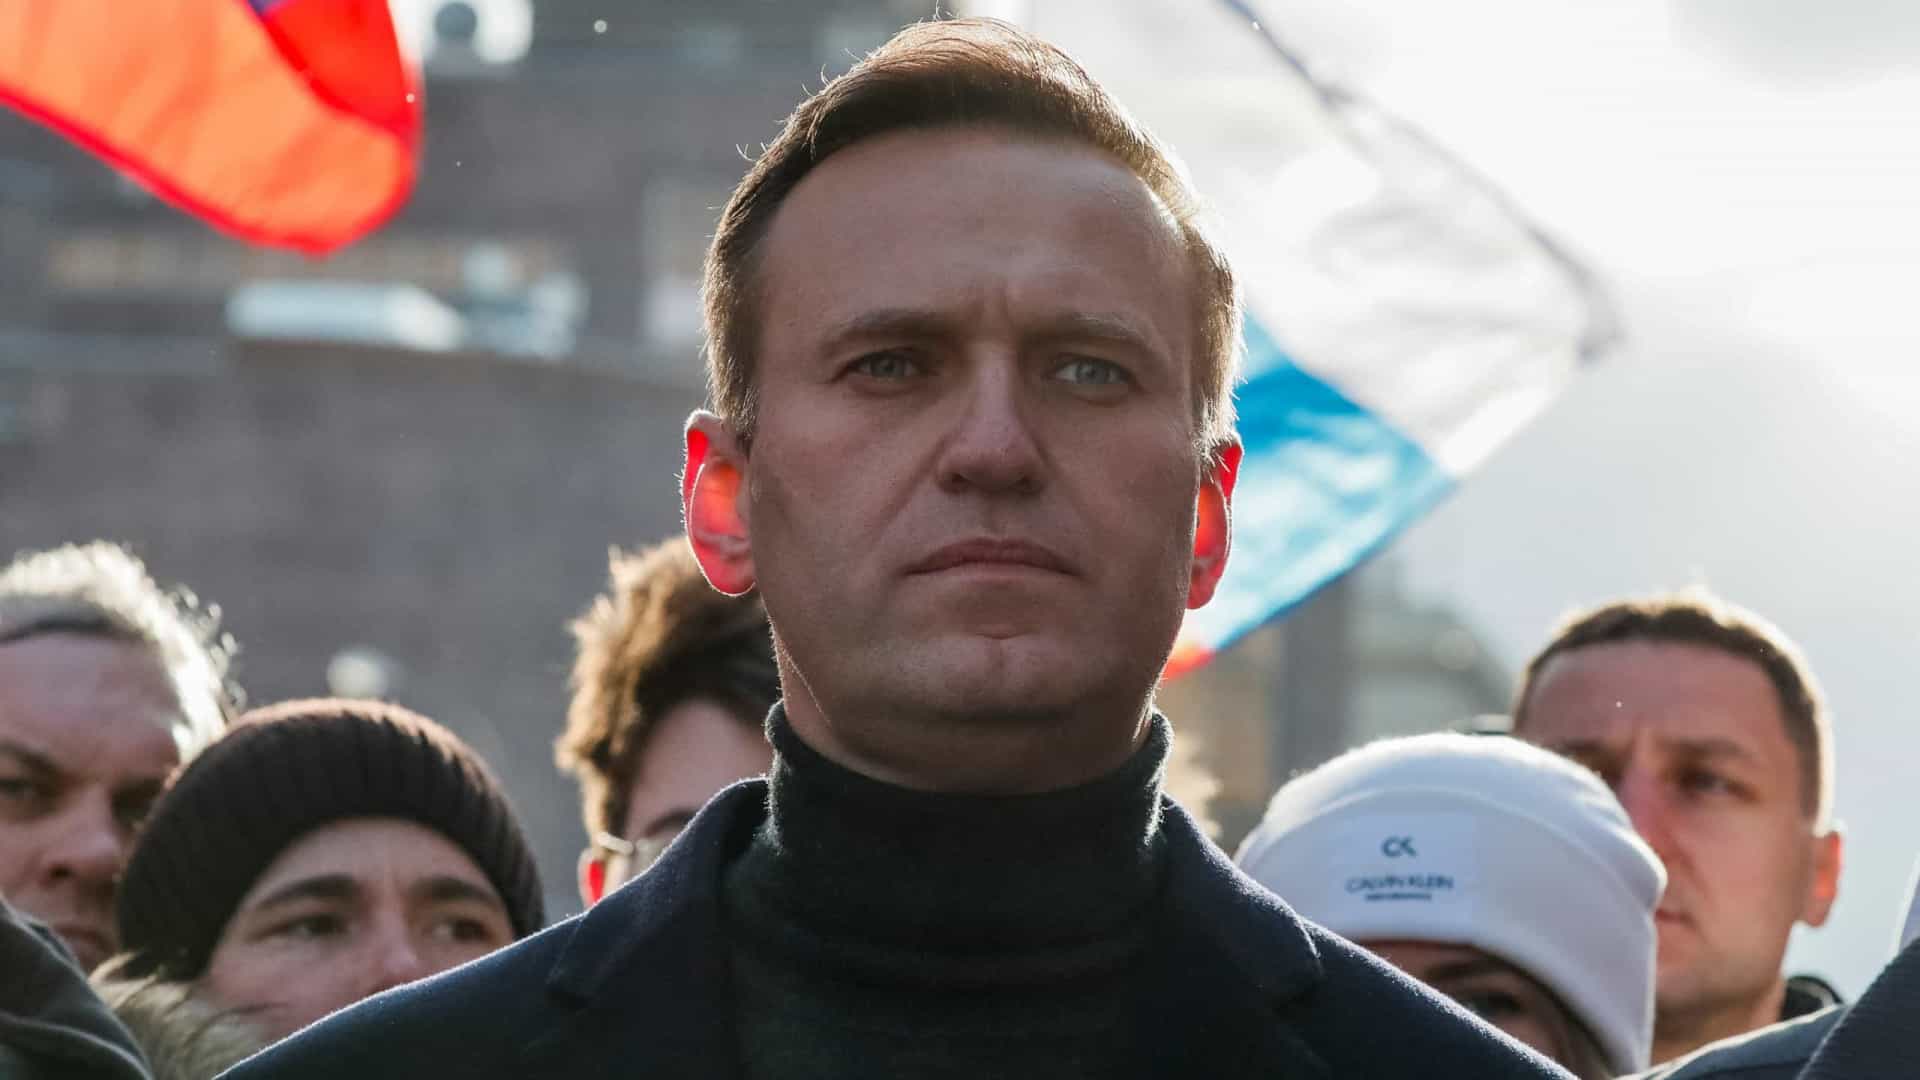 Confirmada condenação a nove anos de prisão a Navalny